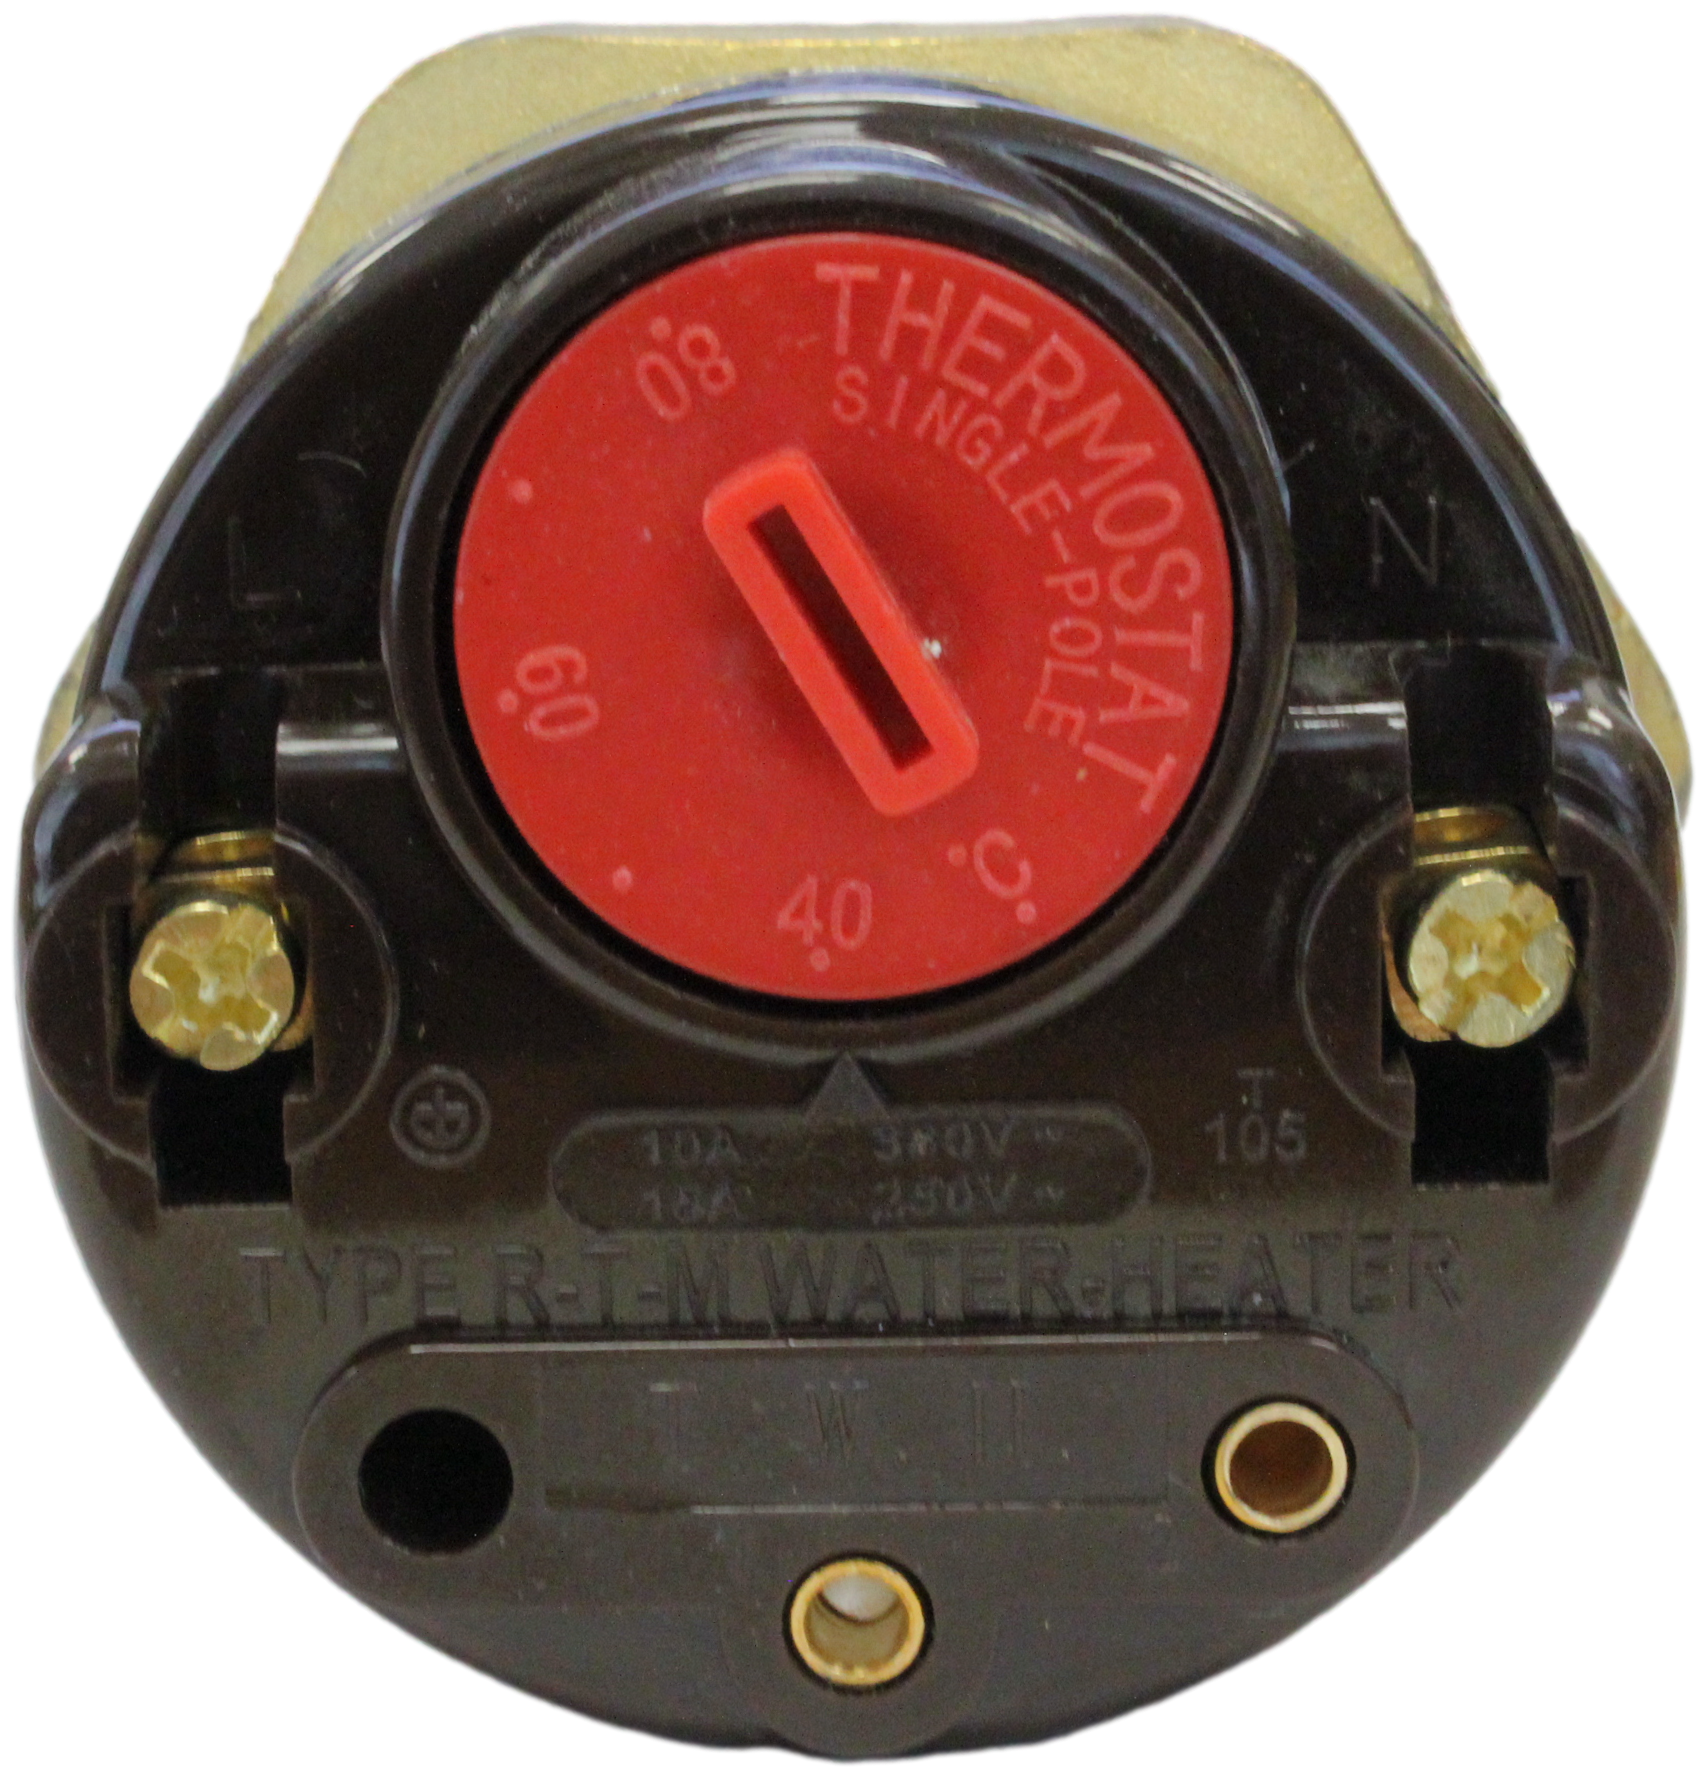 ТЭН RDT 1500 Вт с терморегулятором тип "Ariston" резьба G1 1/4 (D-42мм) для водонагревателя